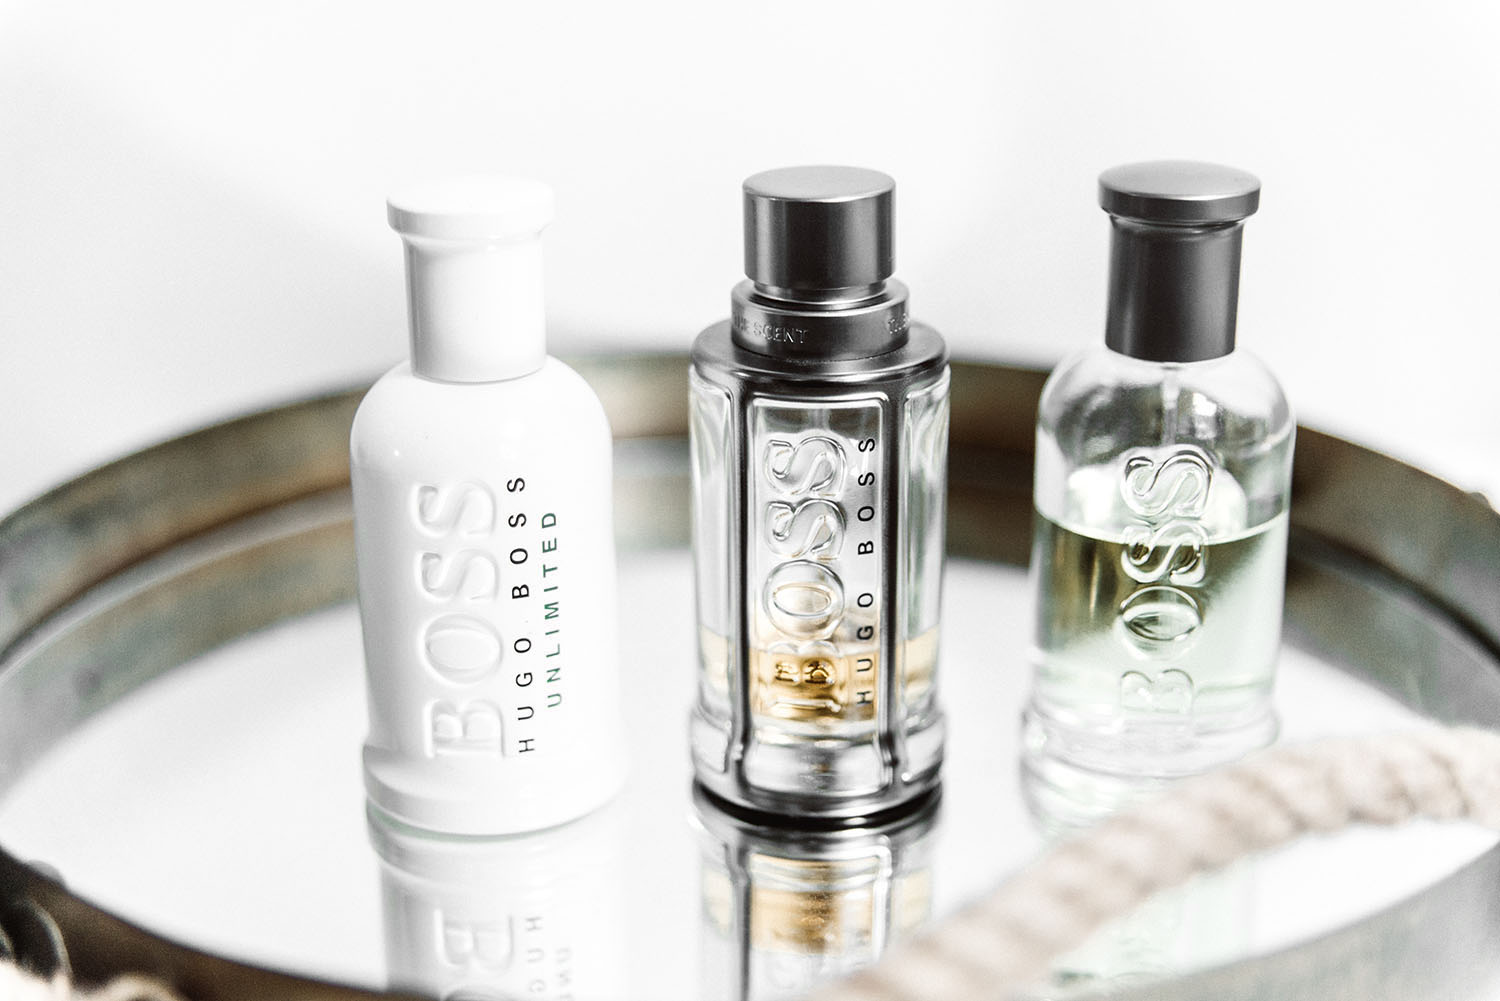 3 Perfumes for him: Hugo Boss Unlimited, Hugo Boss The Scent & Boss Bottled